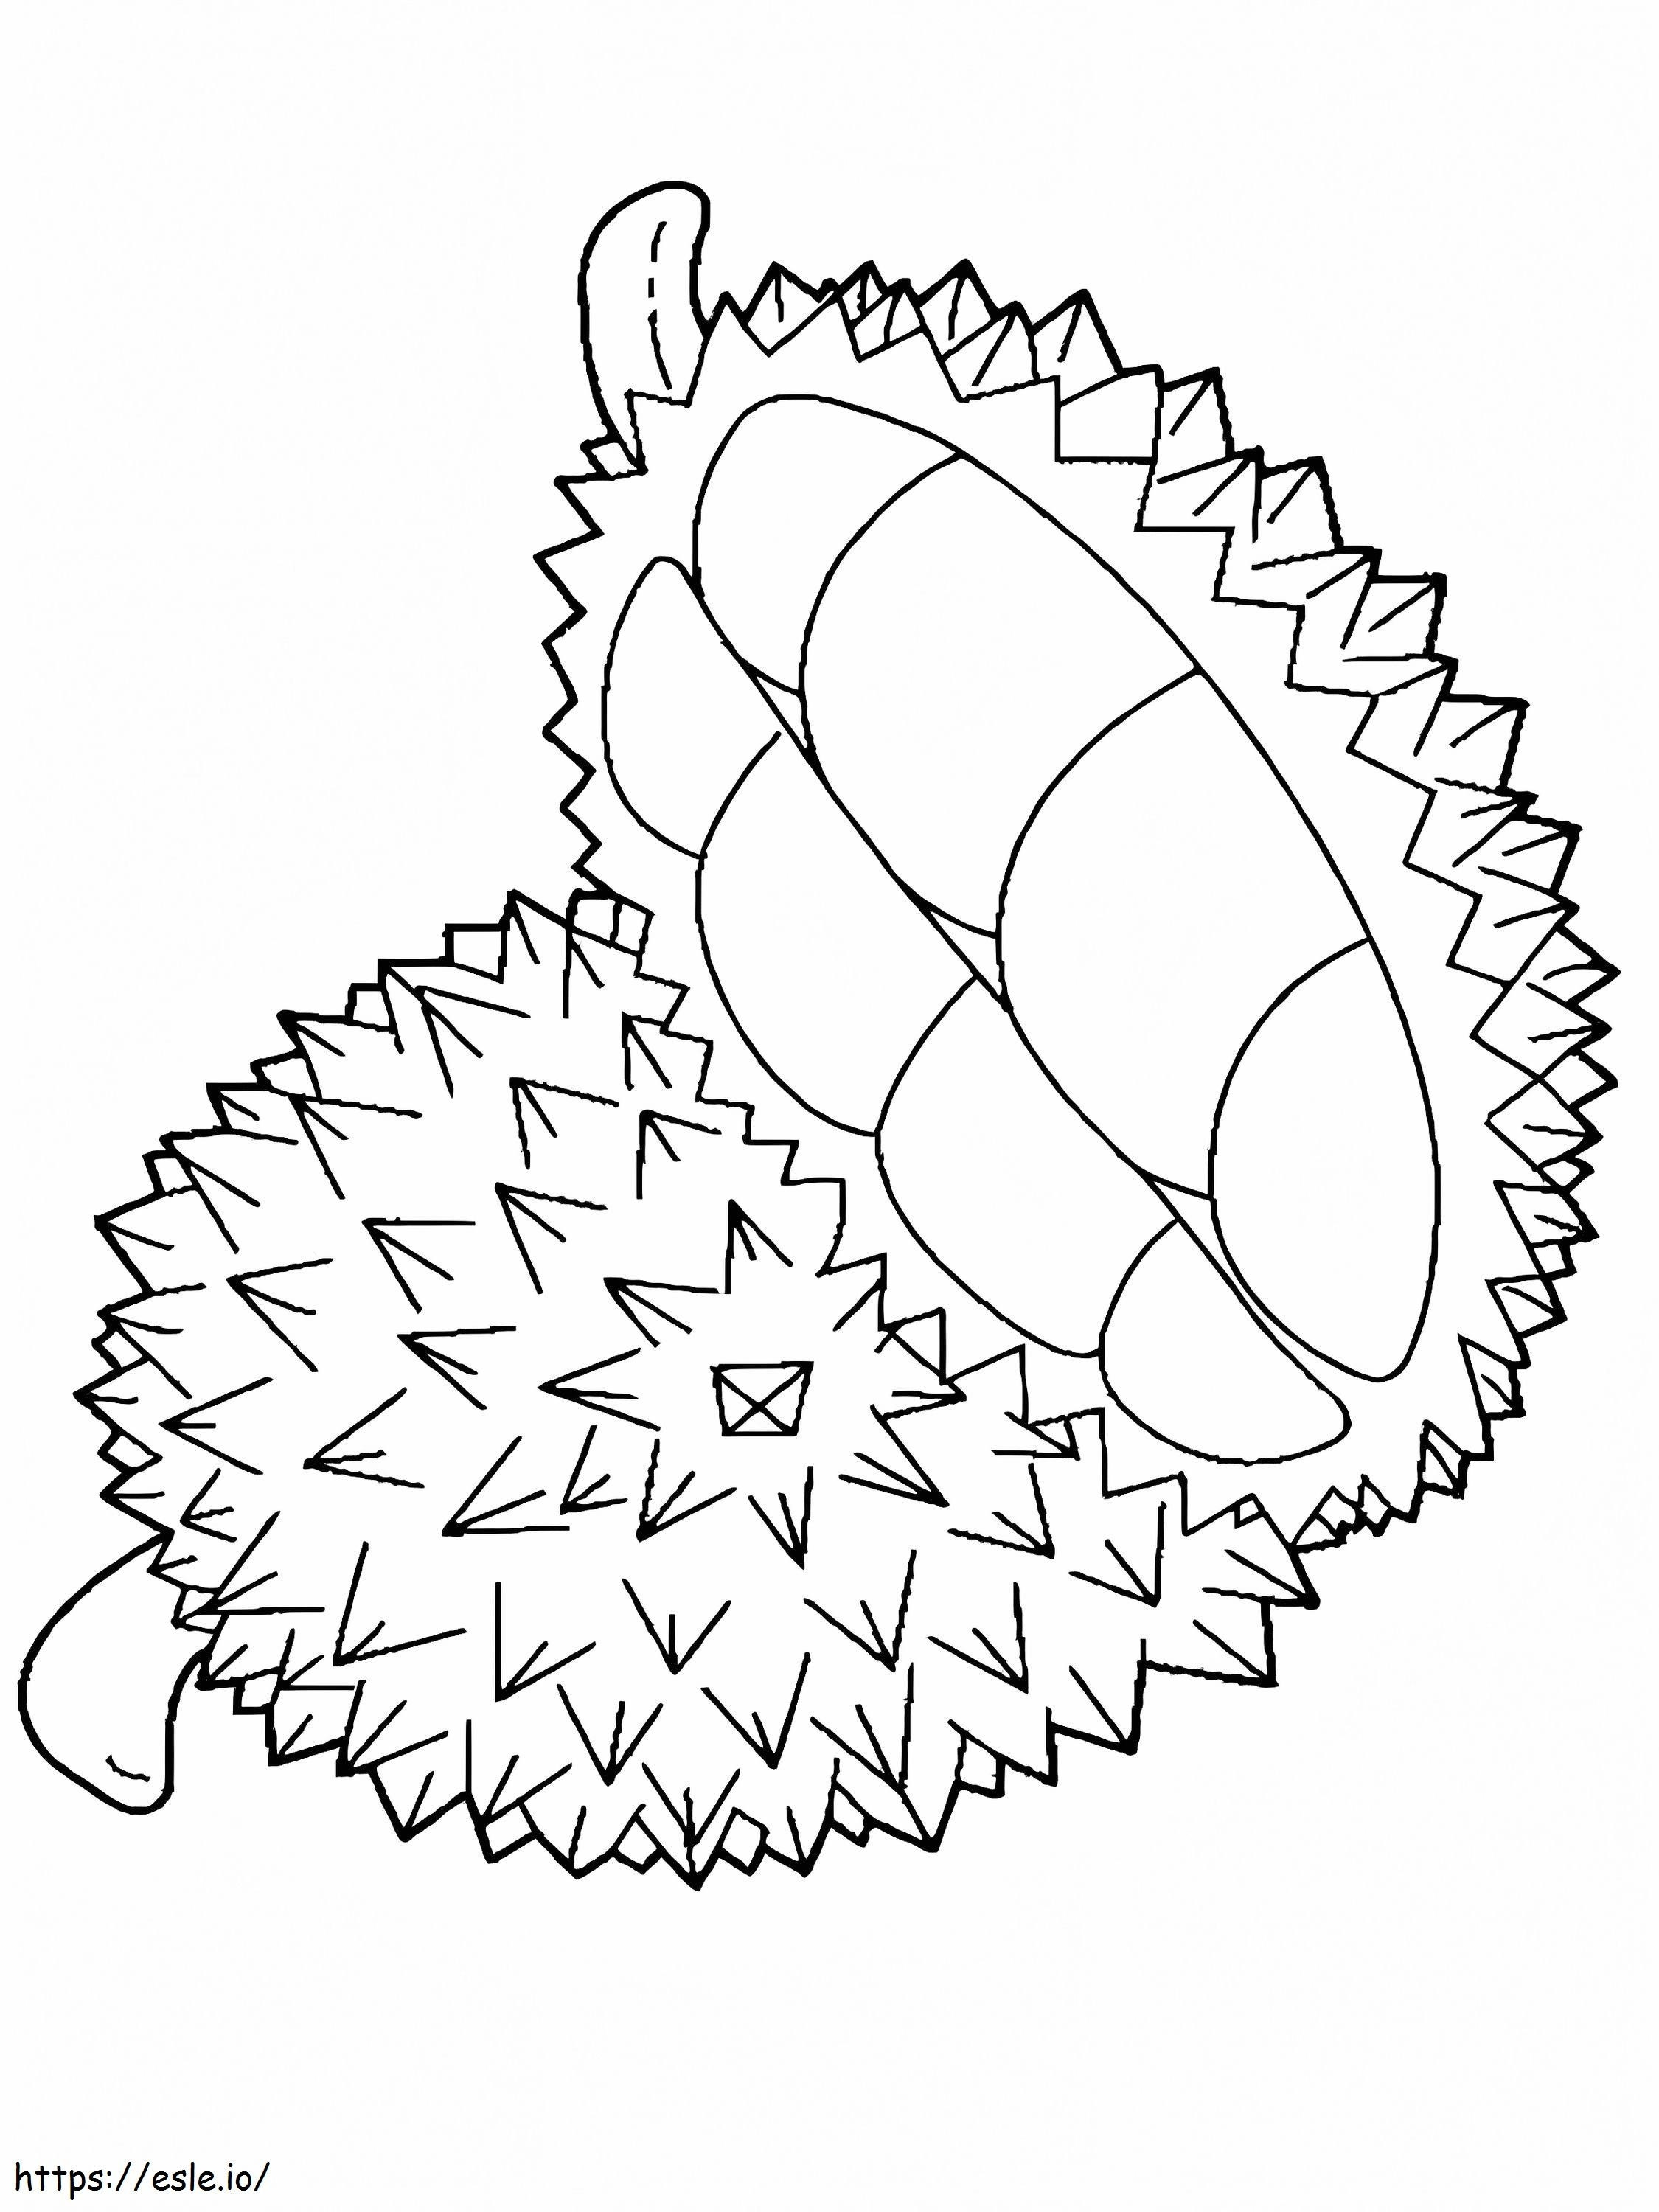 Podstawowy Durian i pół Durian kolorowanka